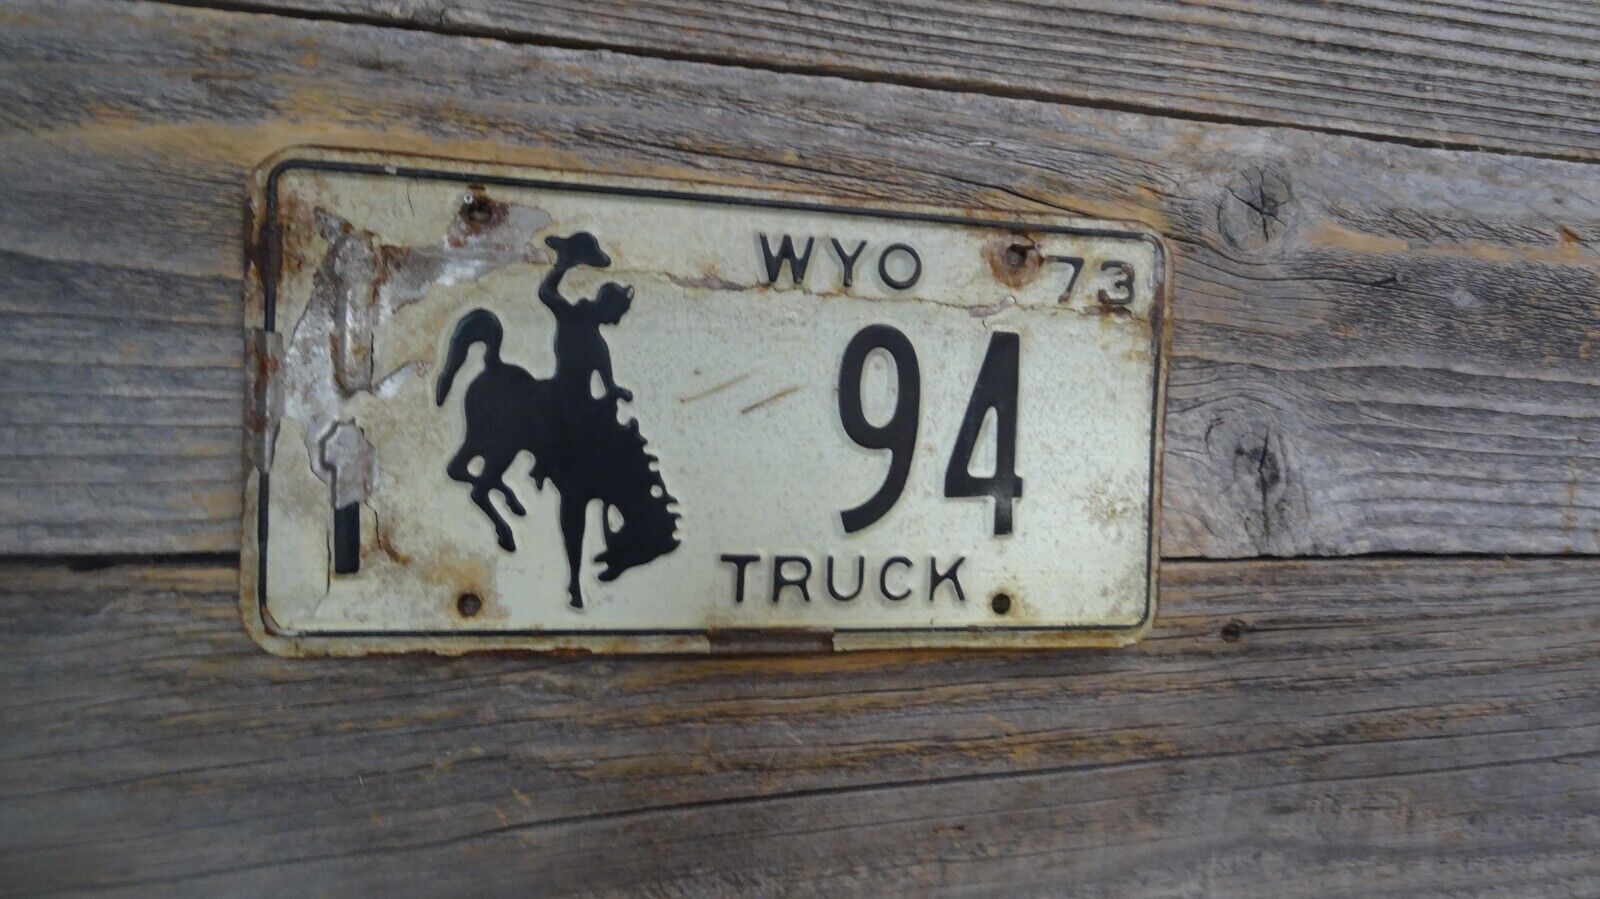 1973 Wyoming Truck license all Original Rustic Look or Restore